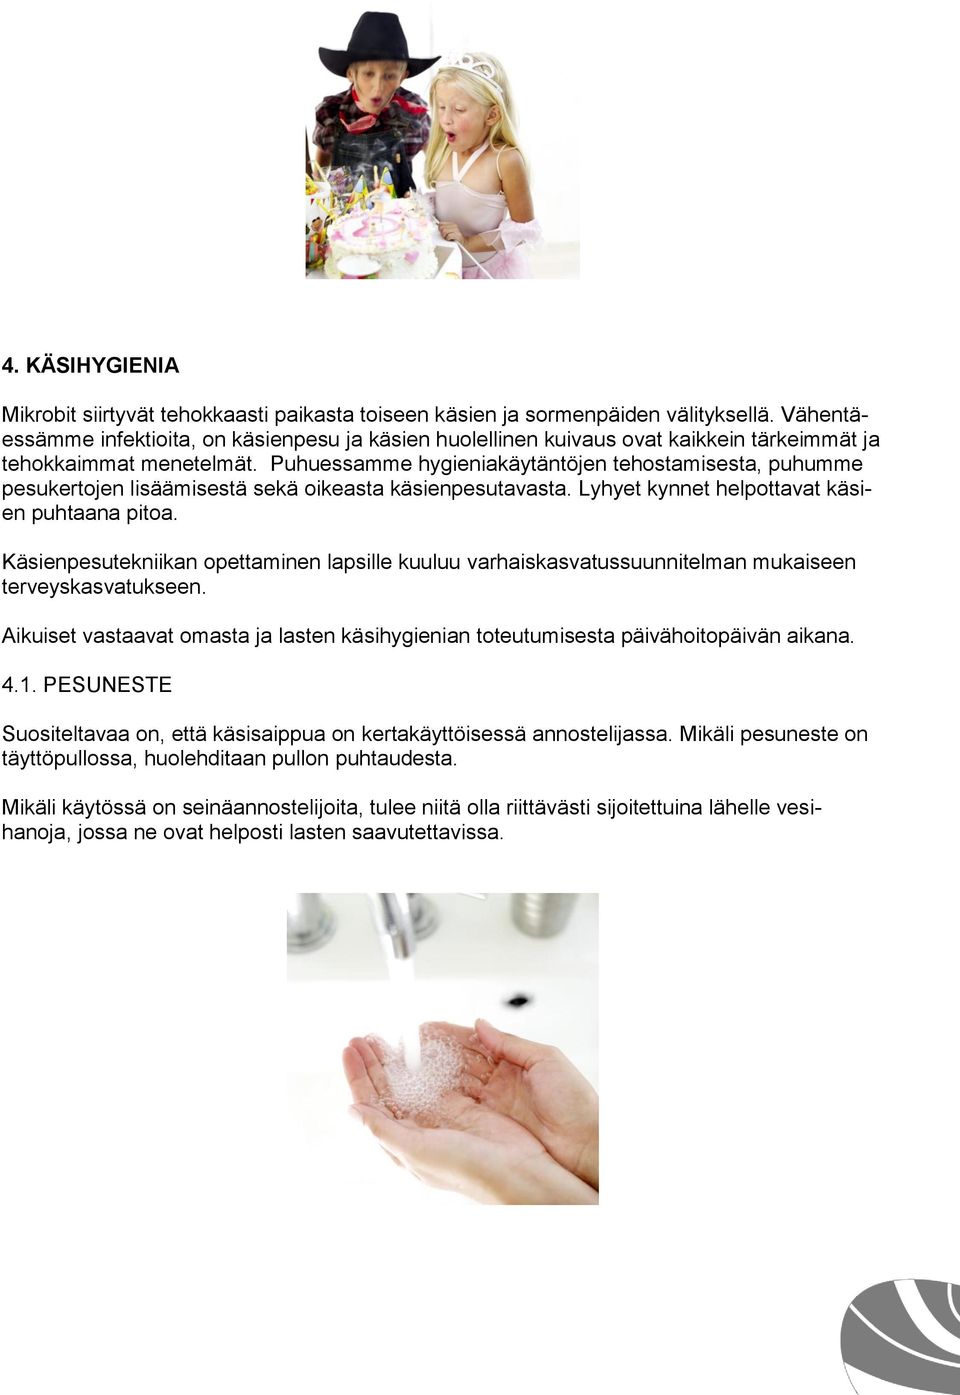 Puhuessamme hygieniakäytäntöjen tehostamisesta, puhumme pesukertojen lisäämisestä sekä oikeasta käsienpesutavasta. Lyhyet kynnet helpottavat käsien puhtaana pitoa.